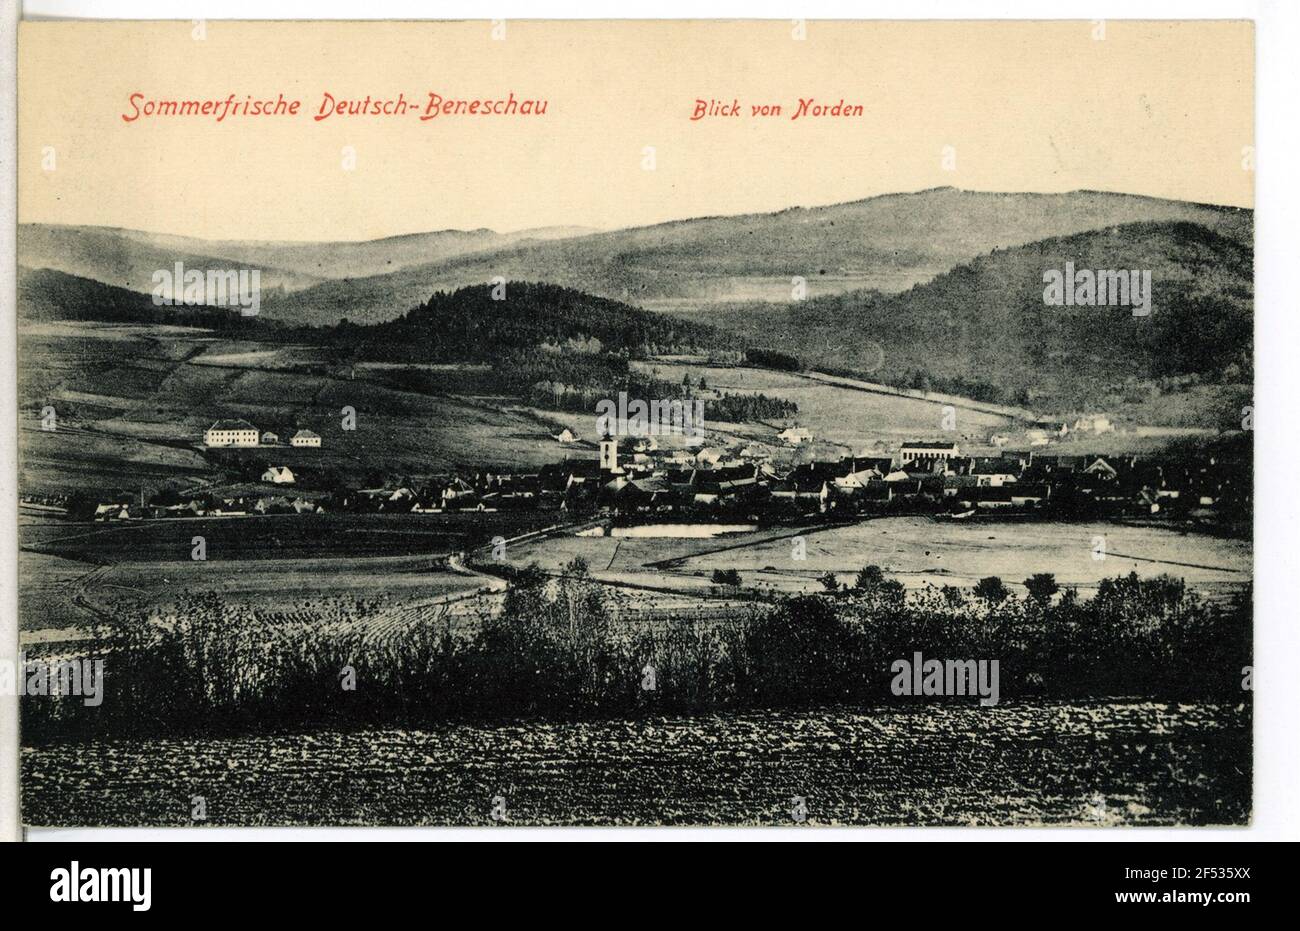 View of Beneschau from the north Beneschau. View of Beneschau from the north Stock Photo